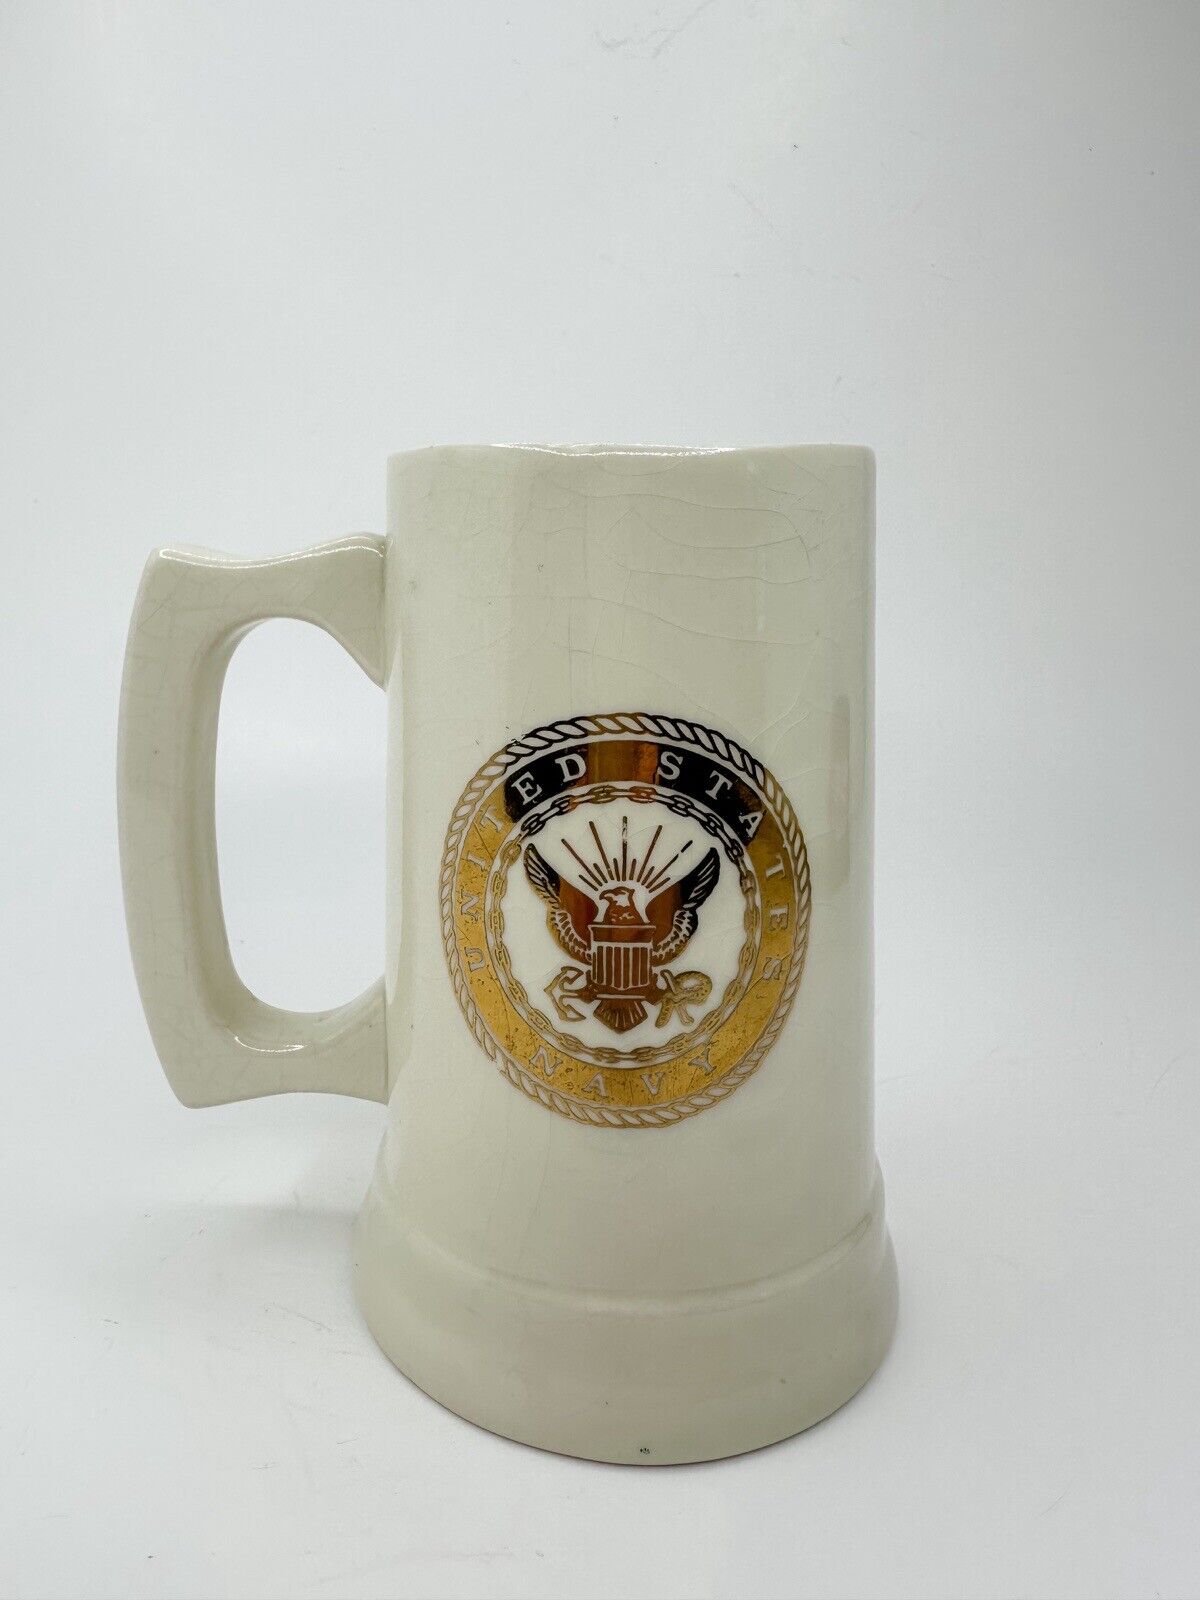 Vintage Rare United States Navy Seabees Coffee Mug Full Speed Ahead